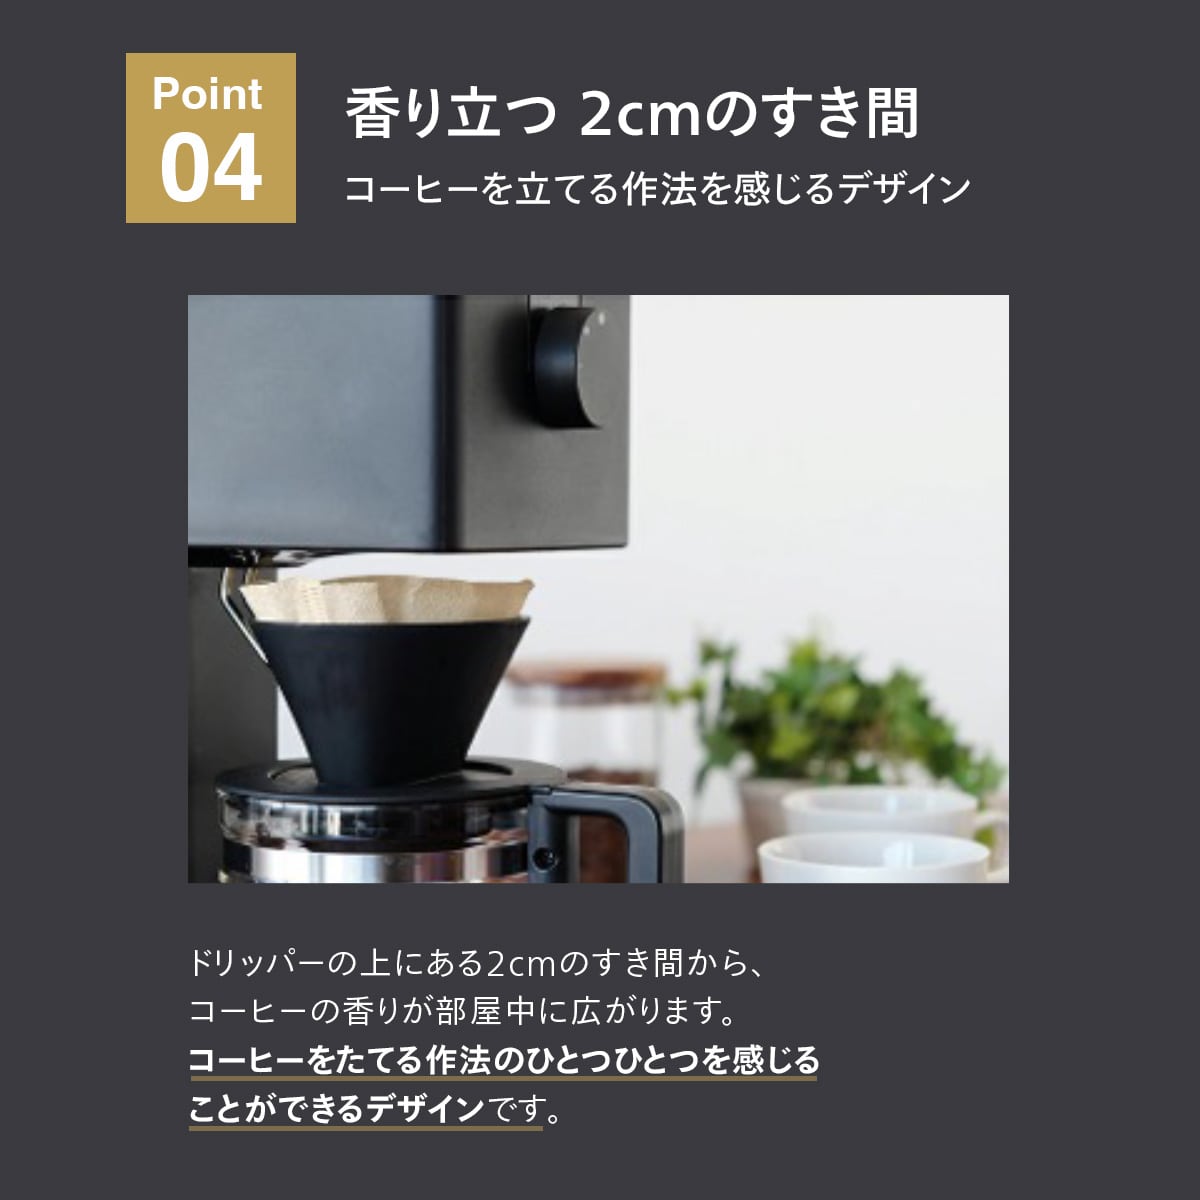 ツインバード 全自動コーヒーメーカー6杯用 CM-D465B TWINBIRD 